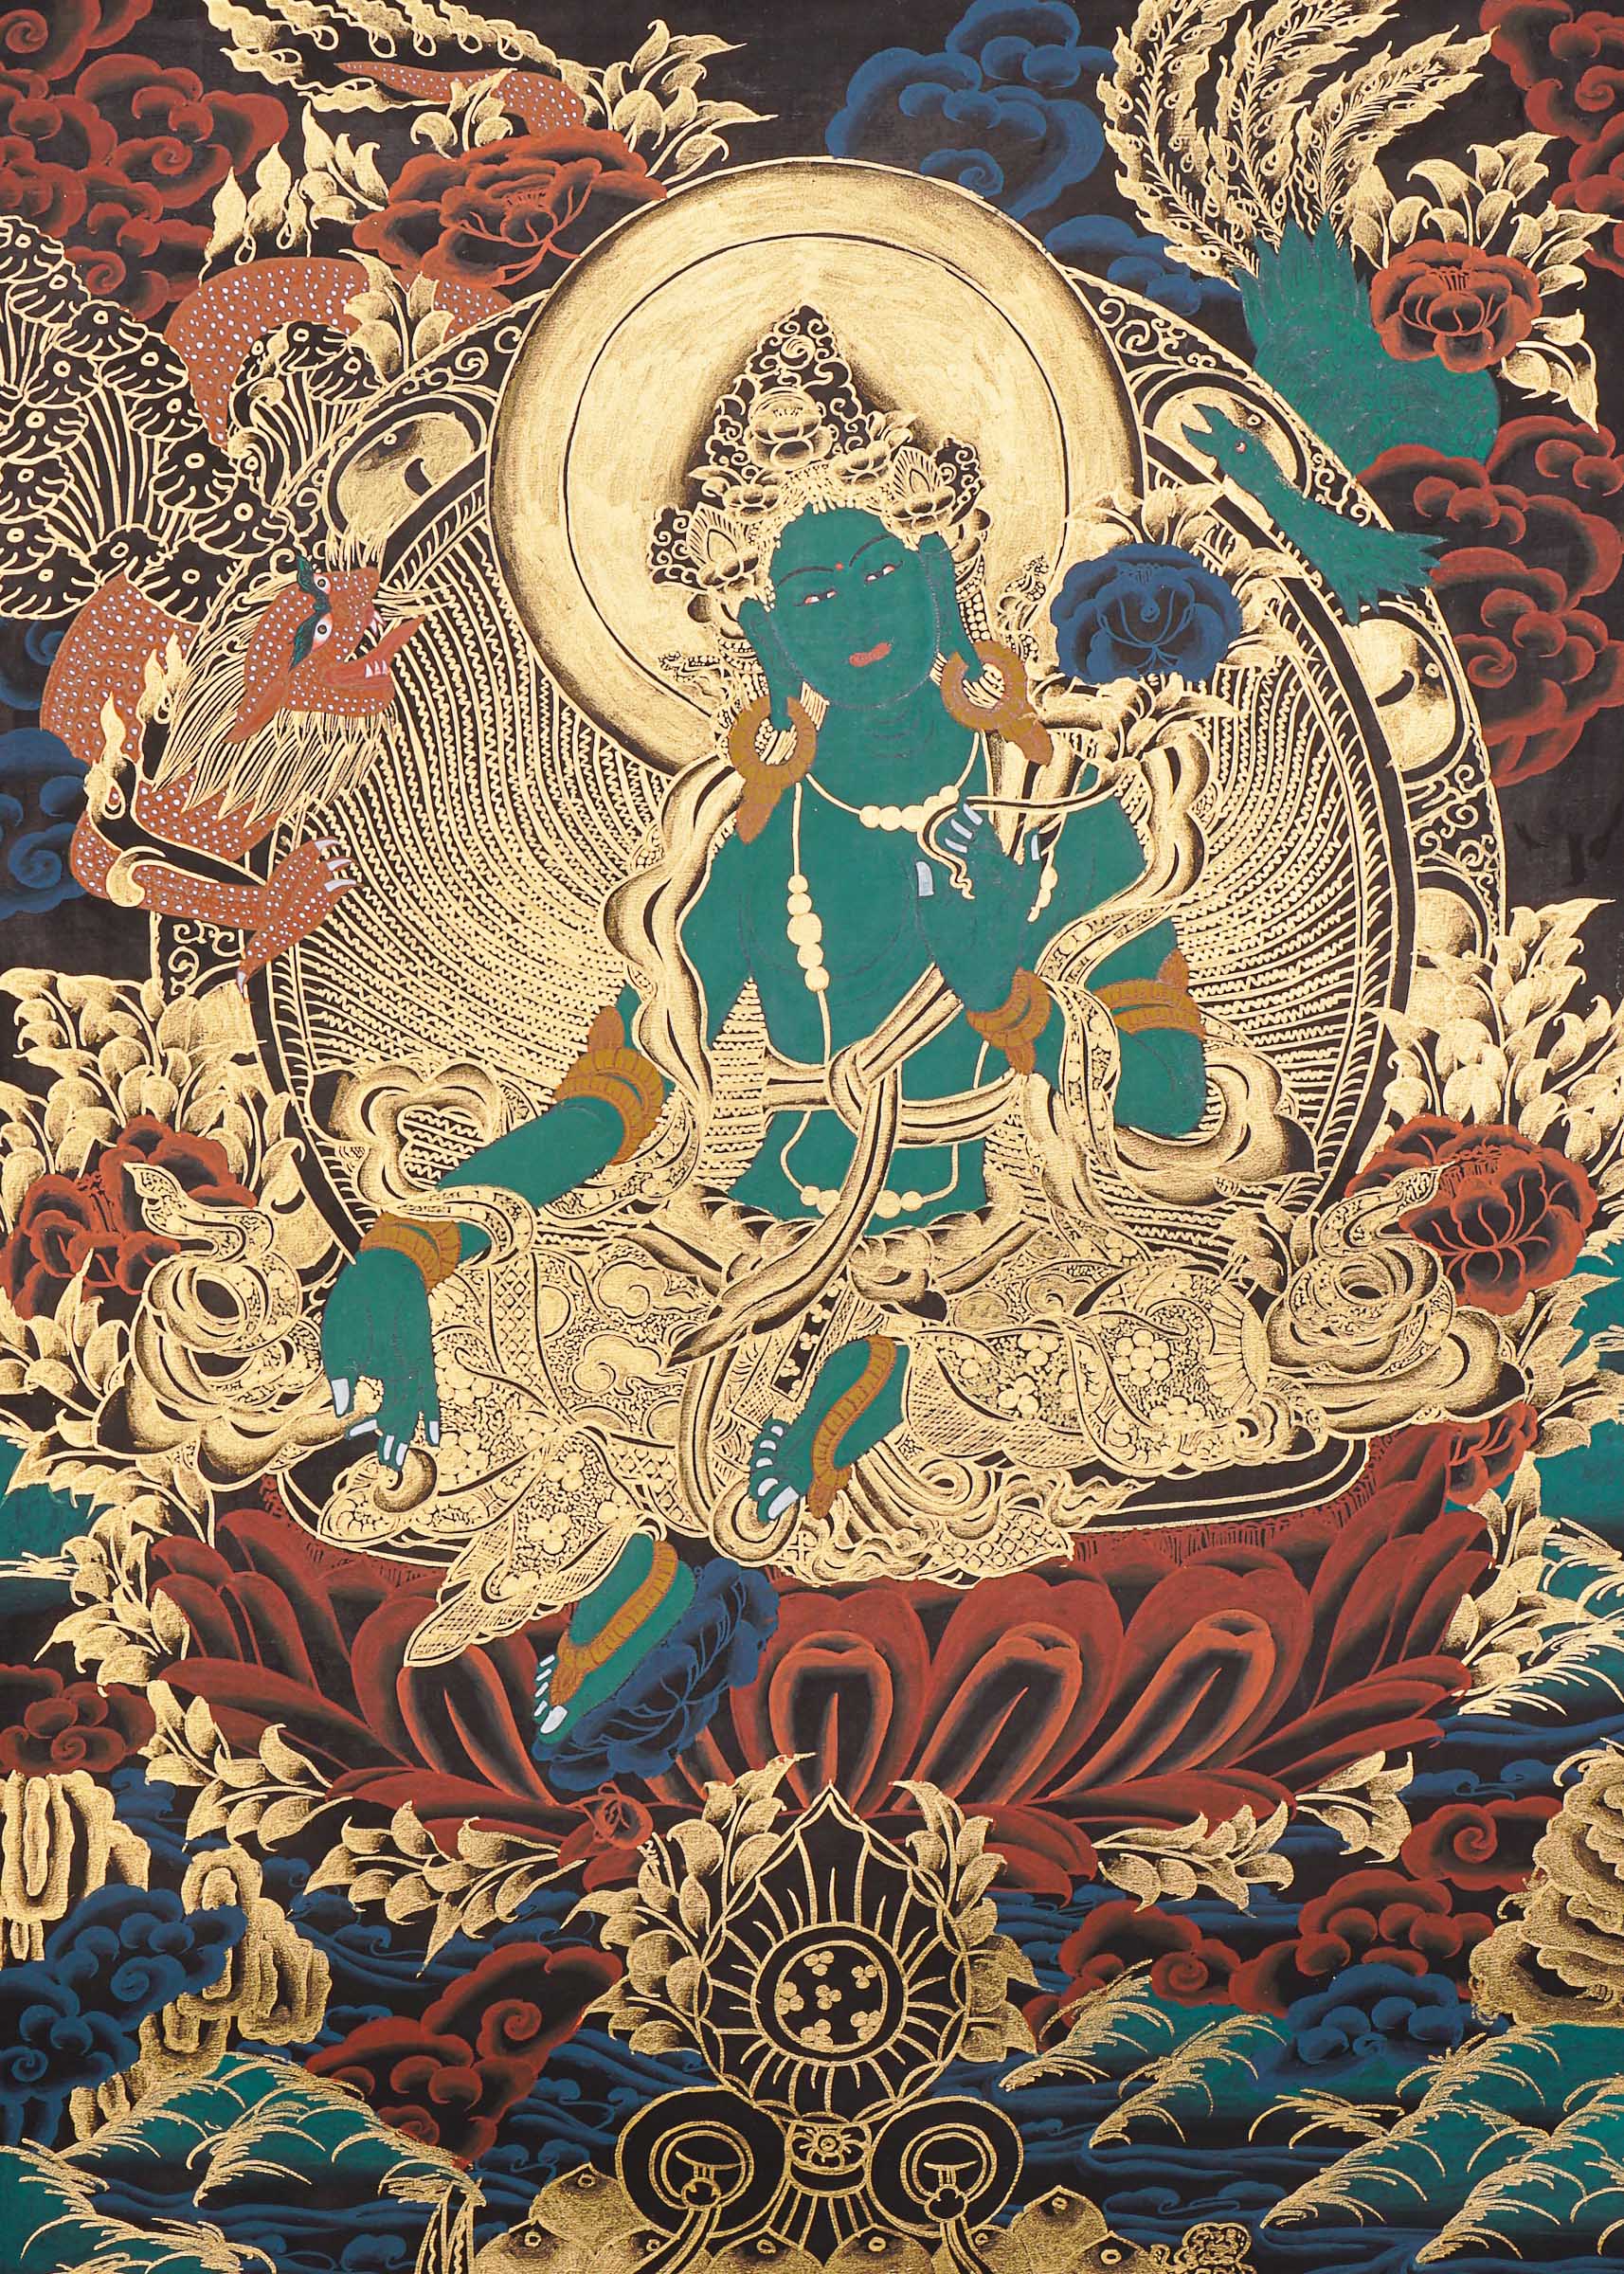 Green Tara Thangka Painting for prayer and meditation.